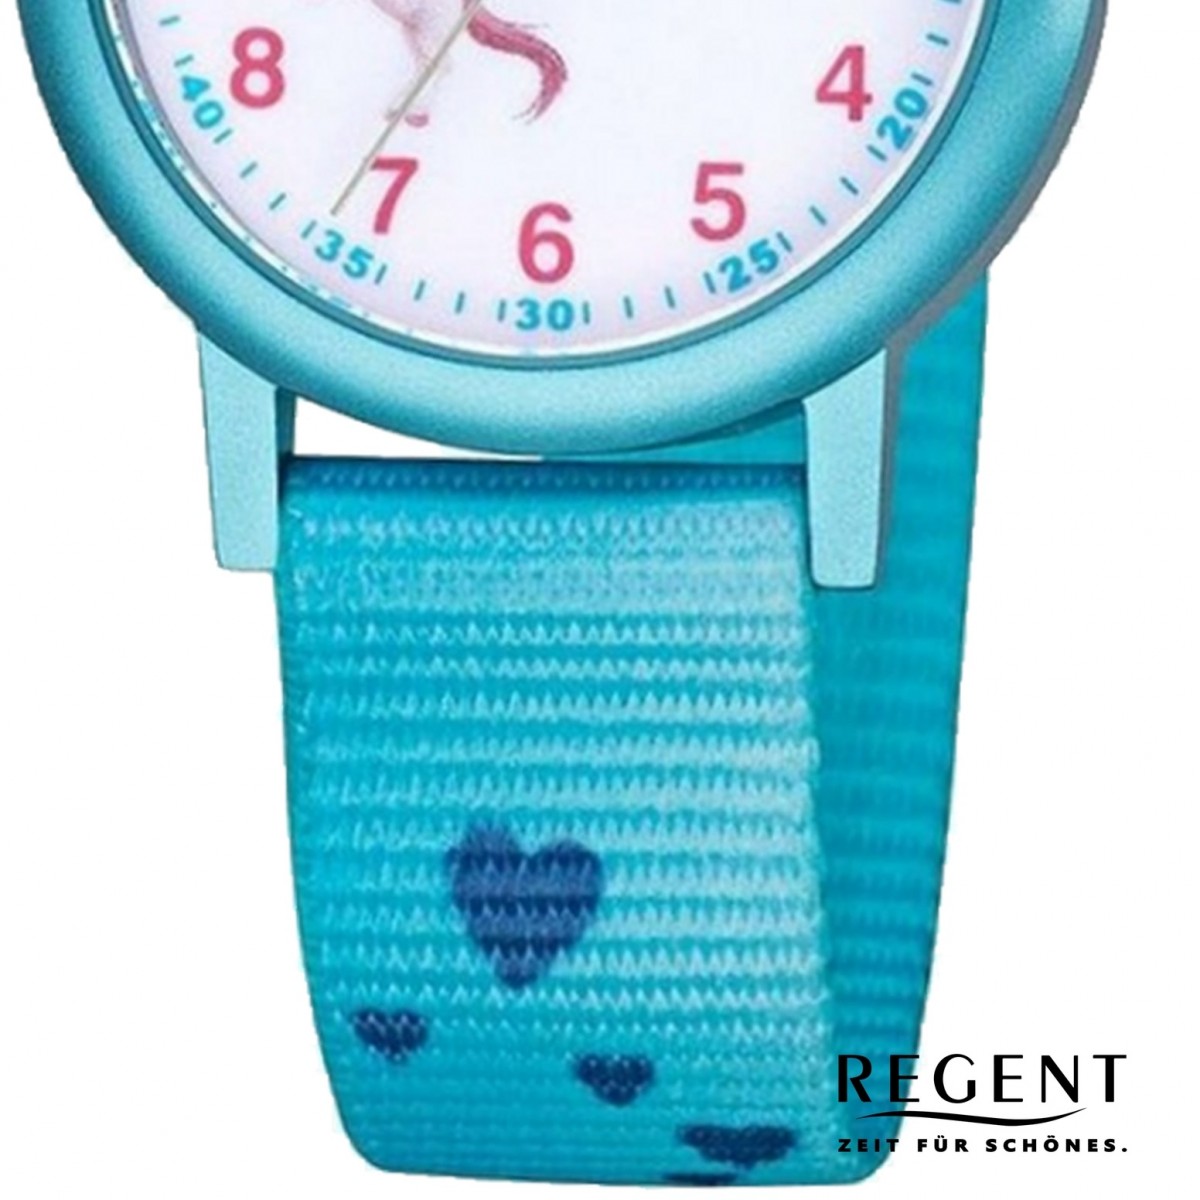 Quarz-Uhr F-1208 Regent Armbanduhr blau Textil Kinder URF1208 Analog